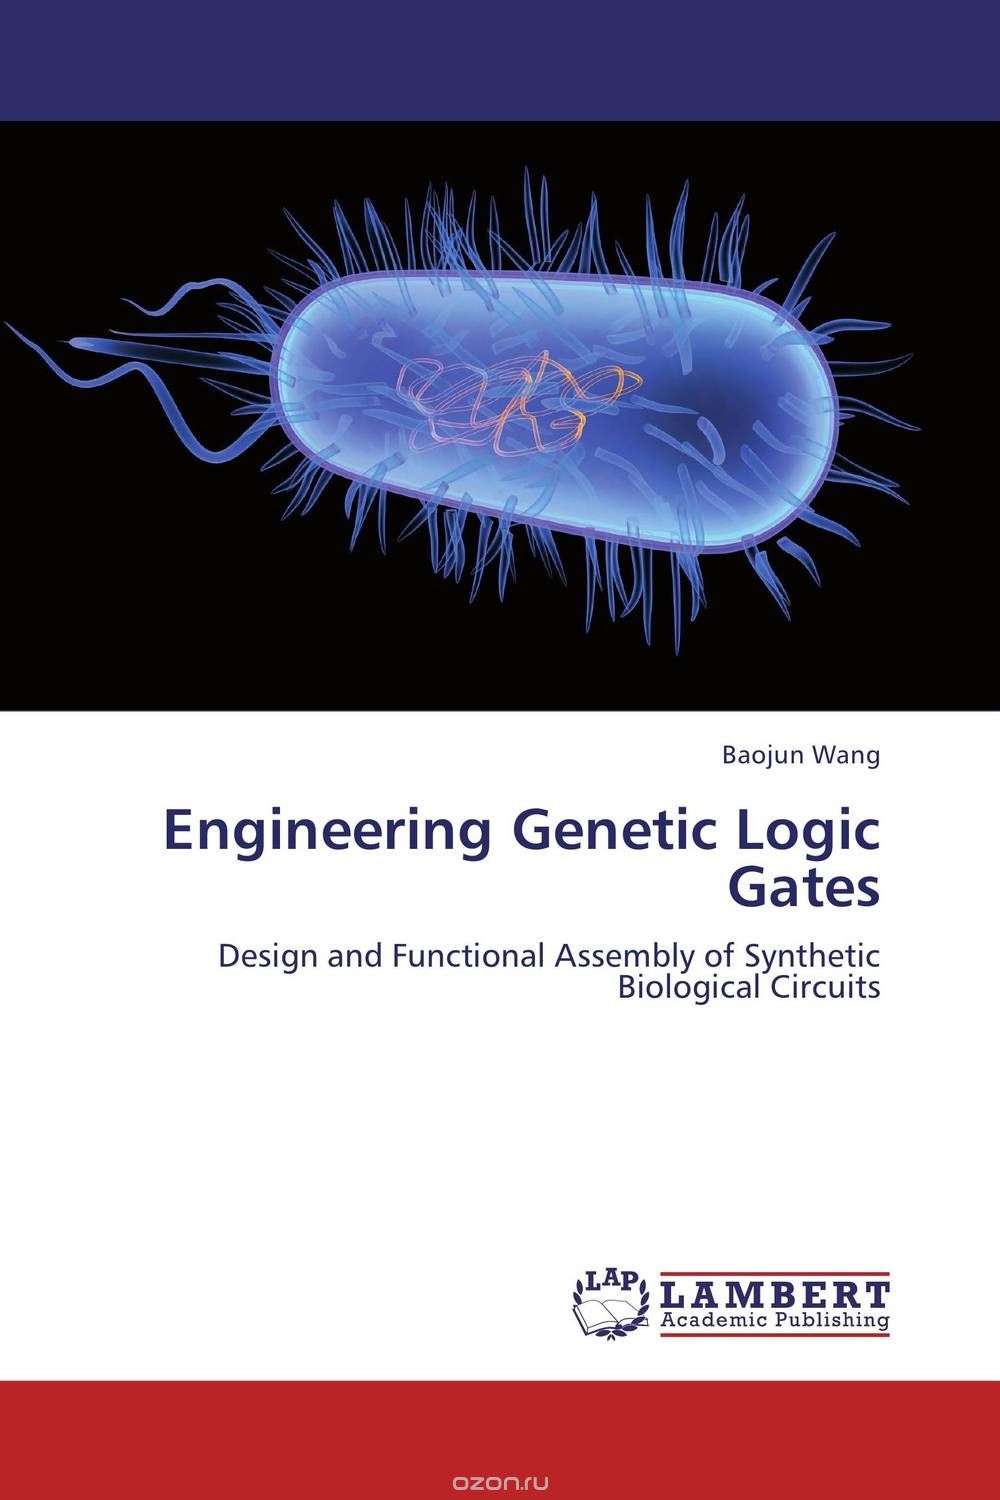 Скачать книгу "Engineering Genetic Logic Gates"